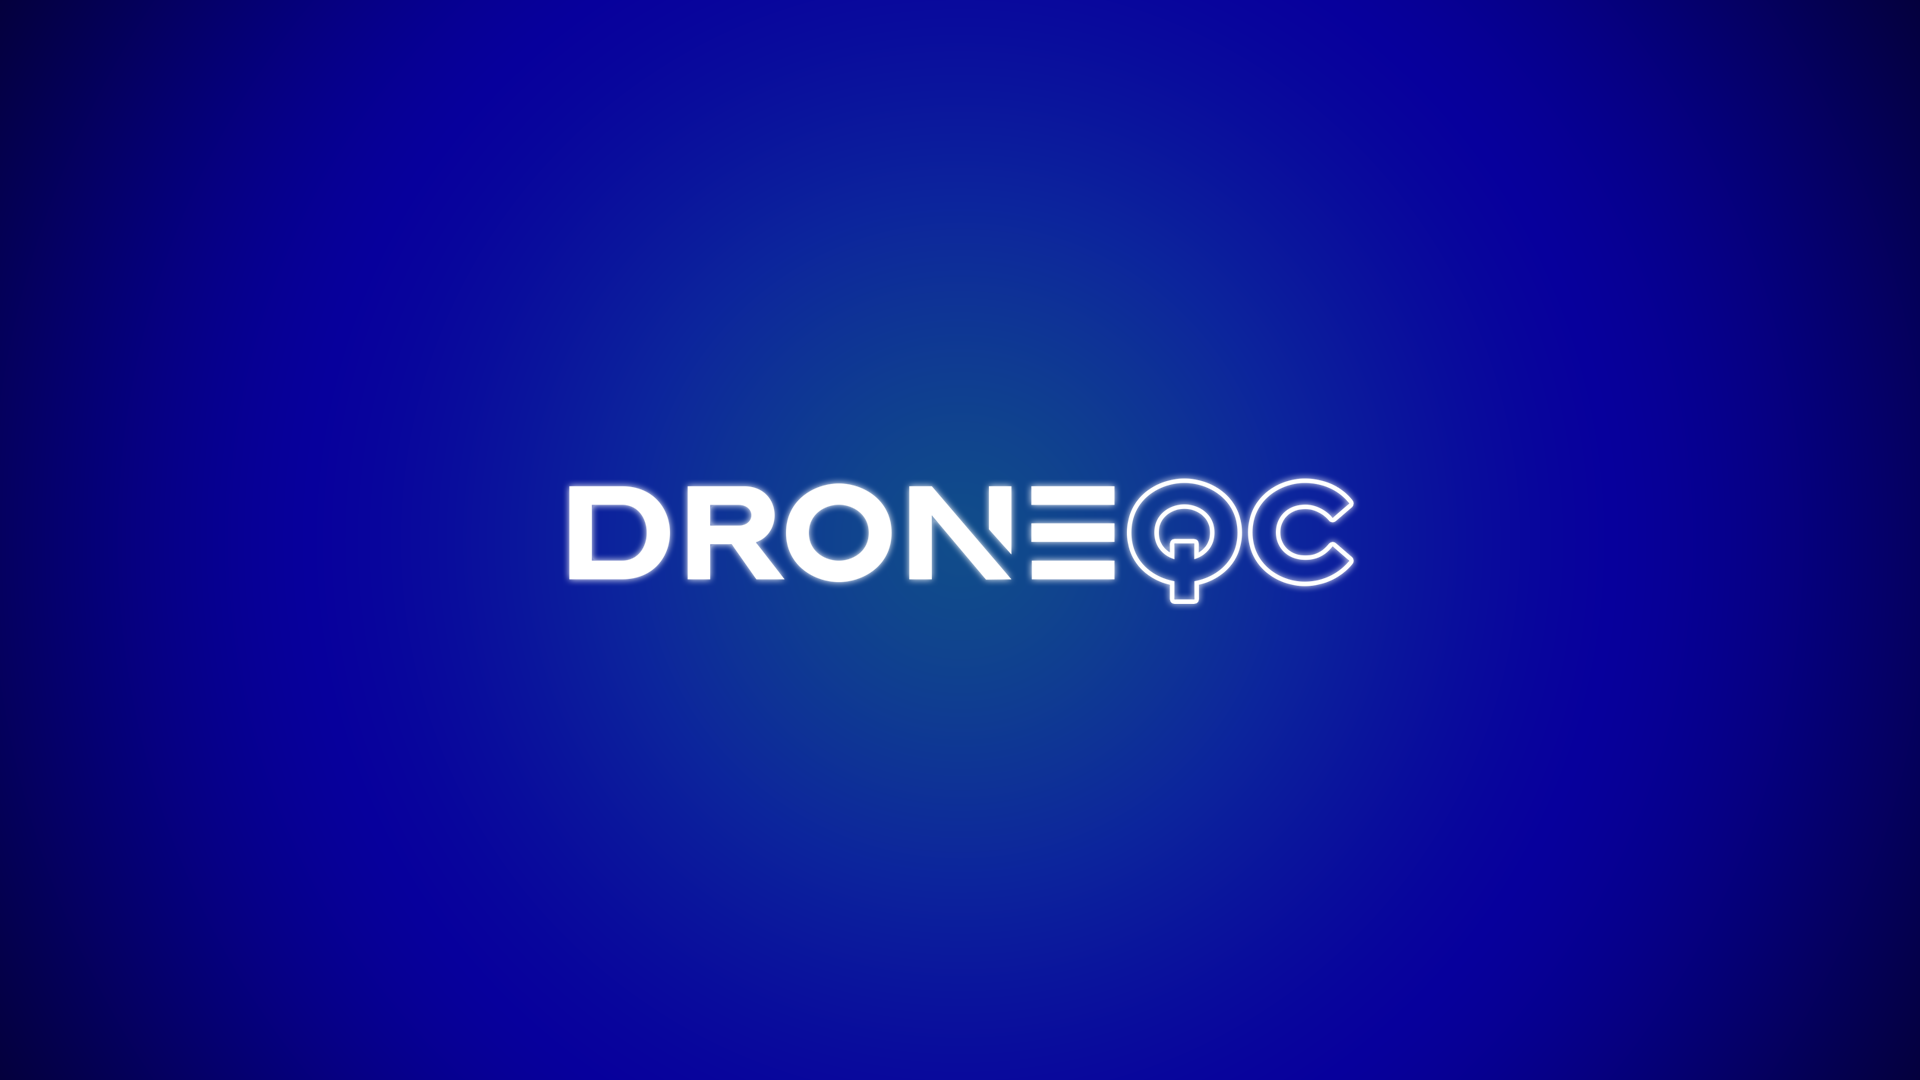 DroneQC